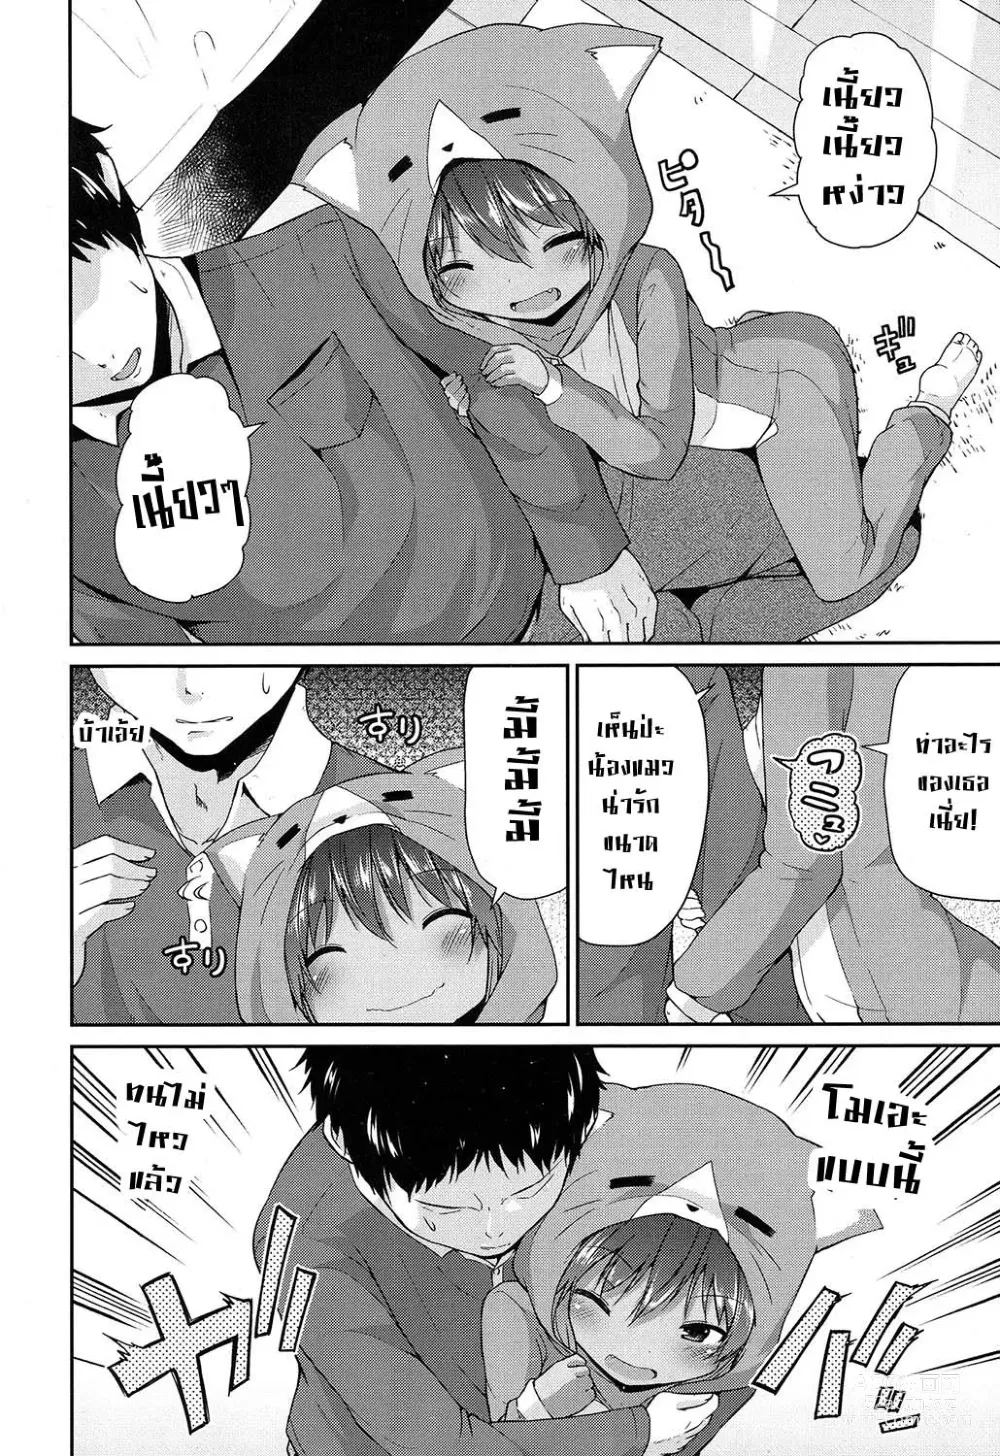 Page 4 of manga Waga Uchi no Neko Jijou